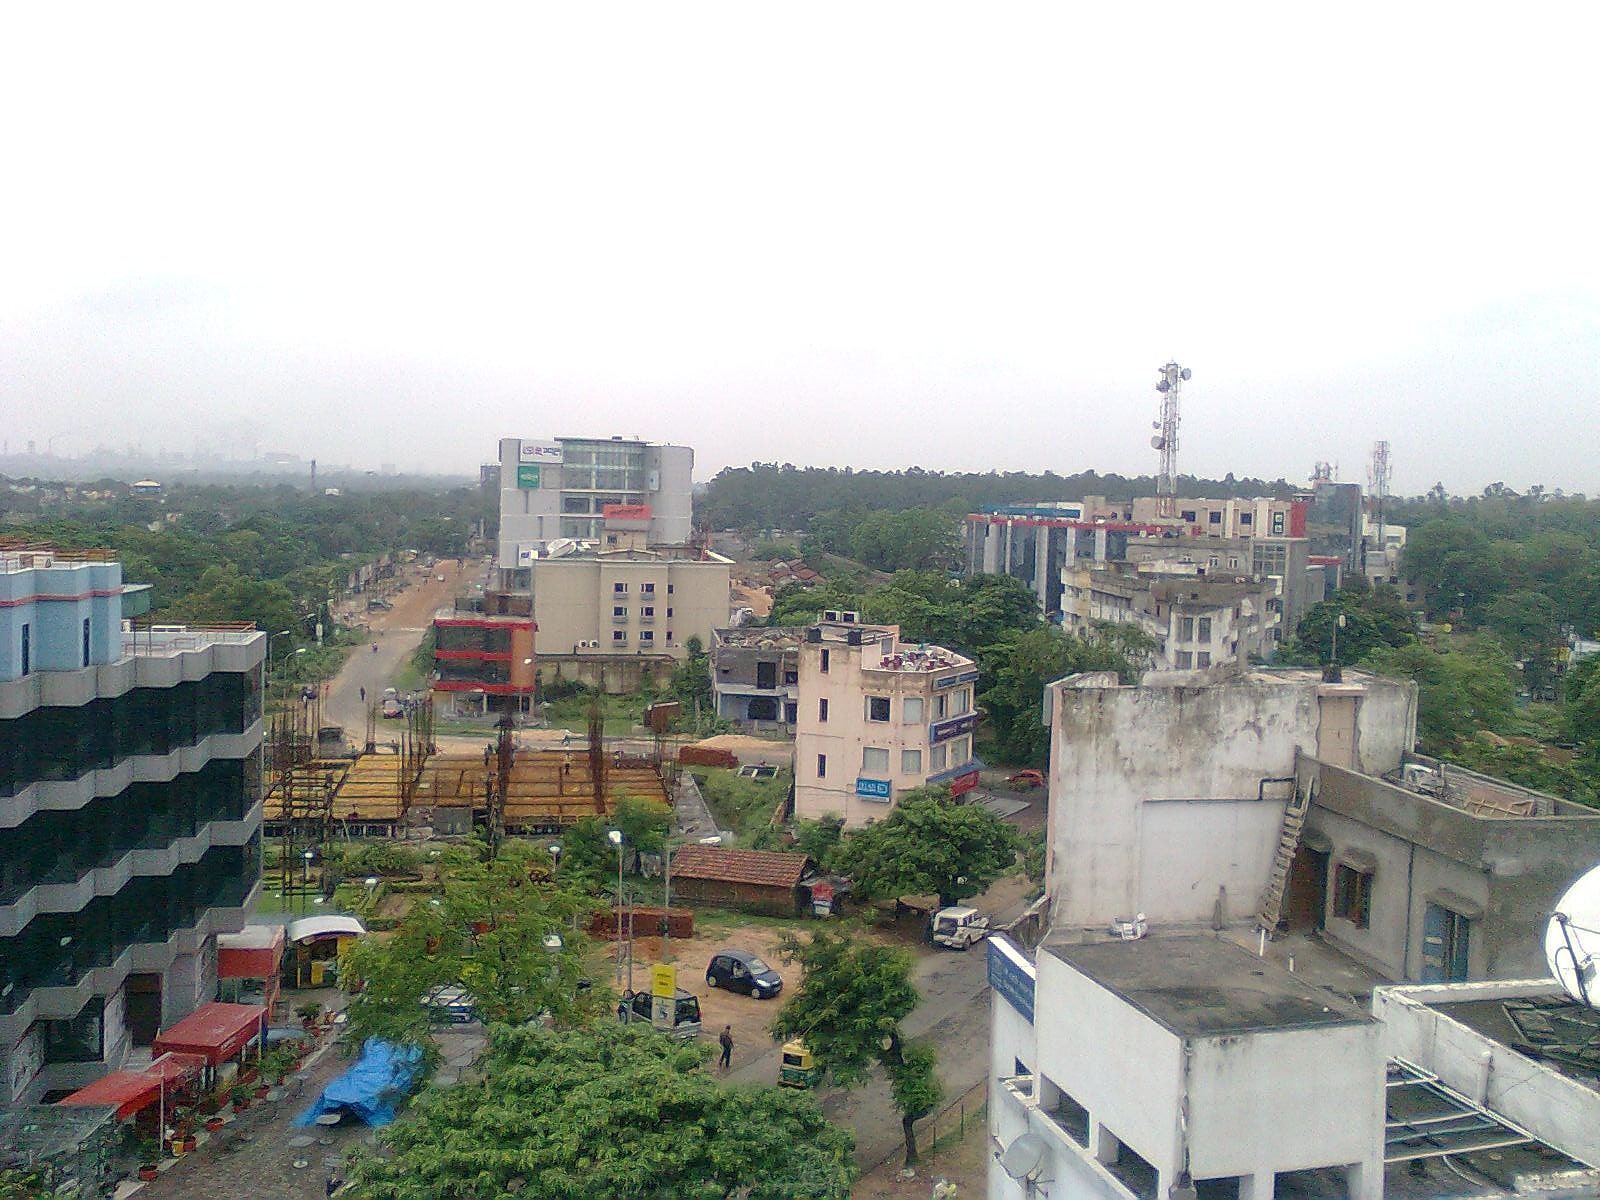 Durgapur, India